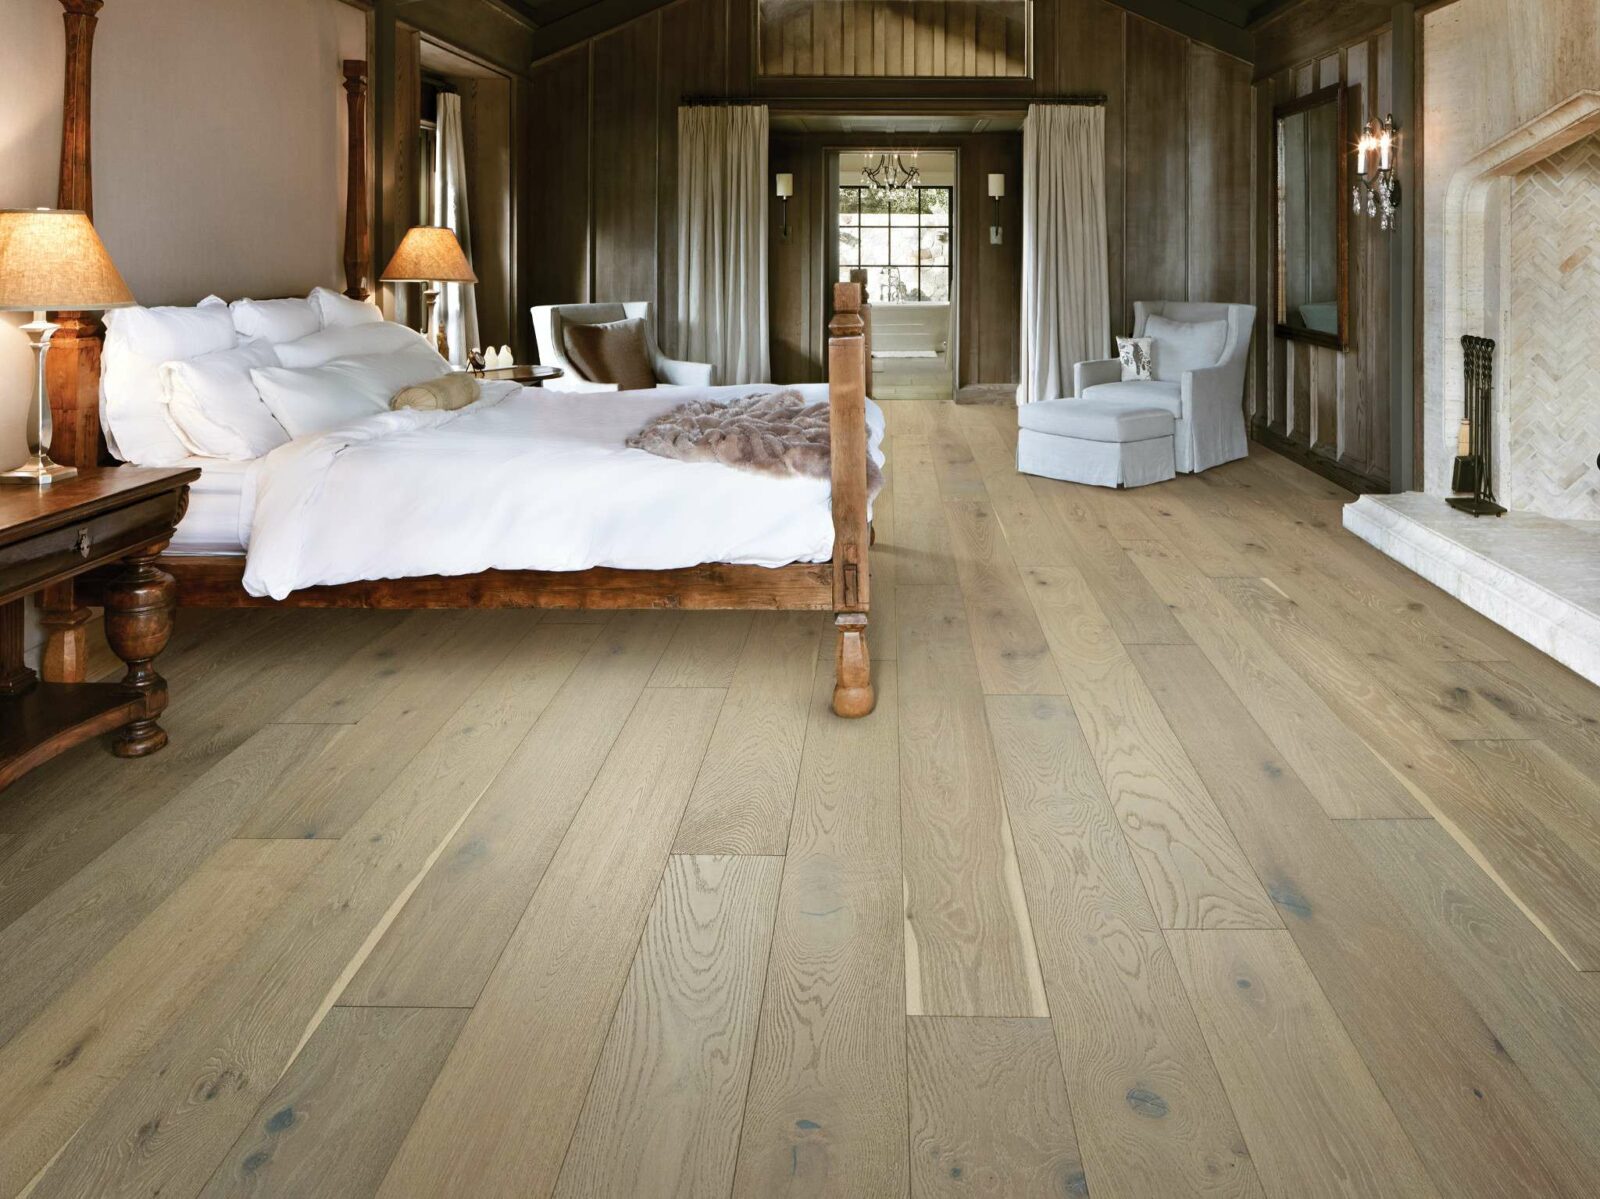 Bedroom flooring | Location Carpet